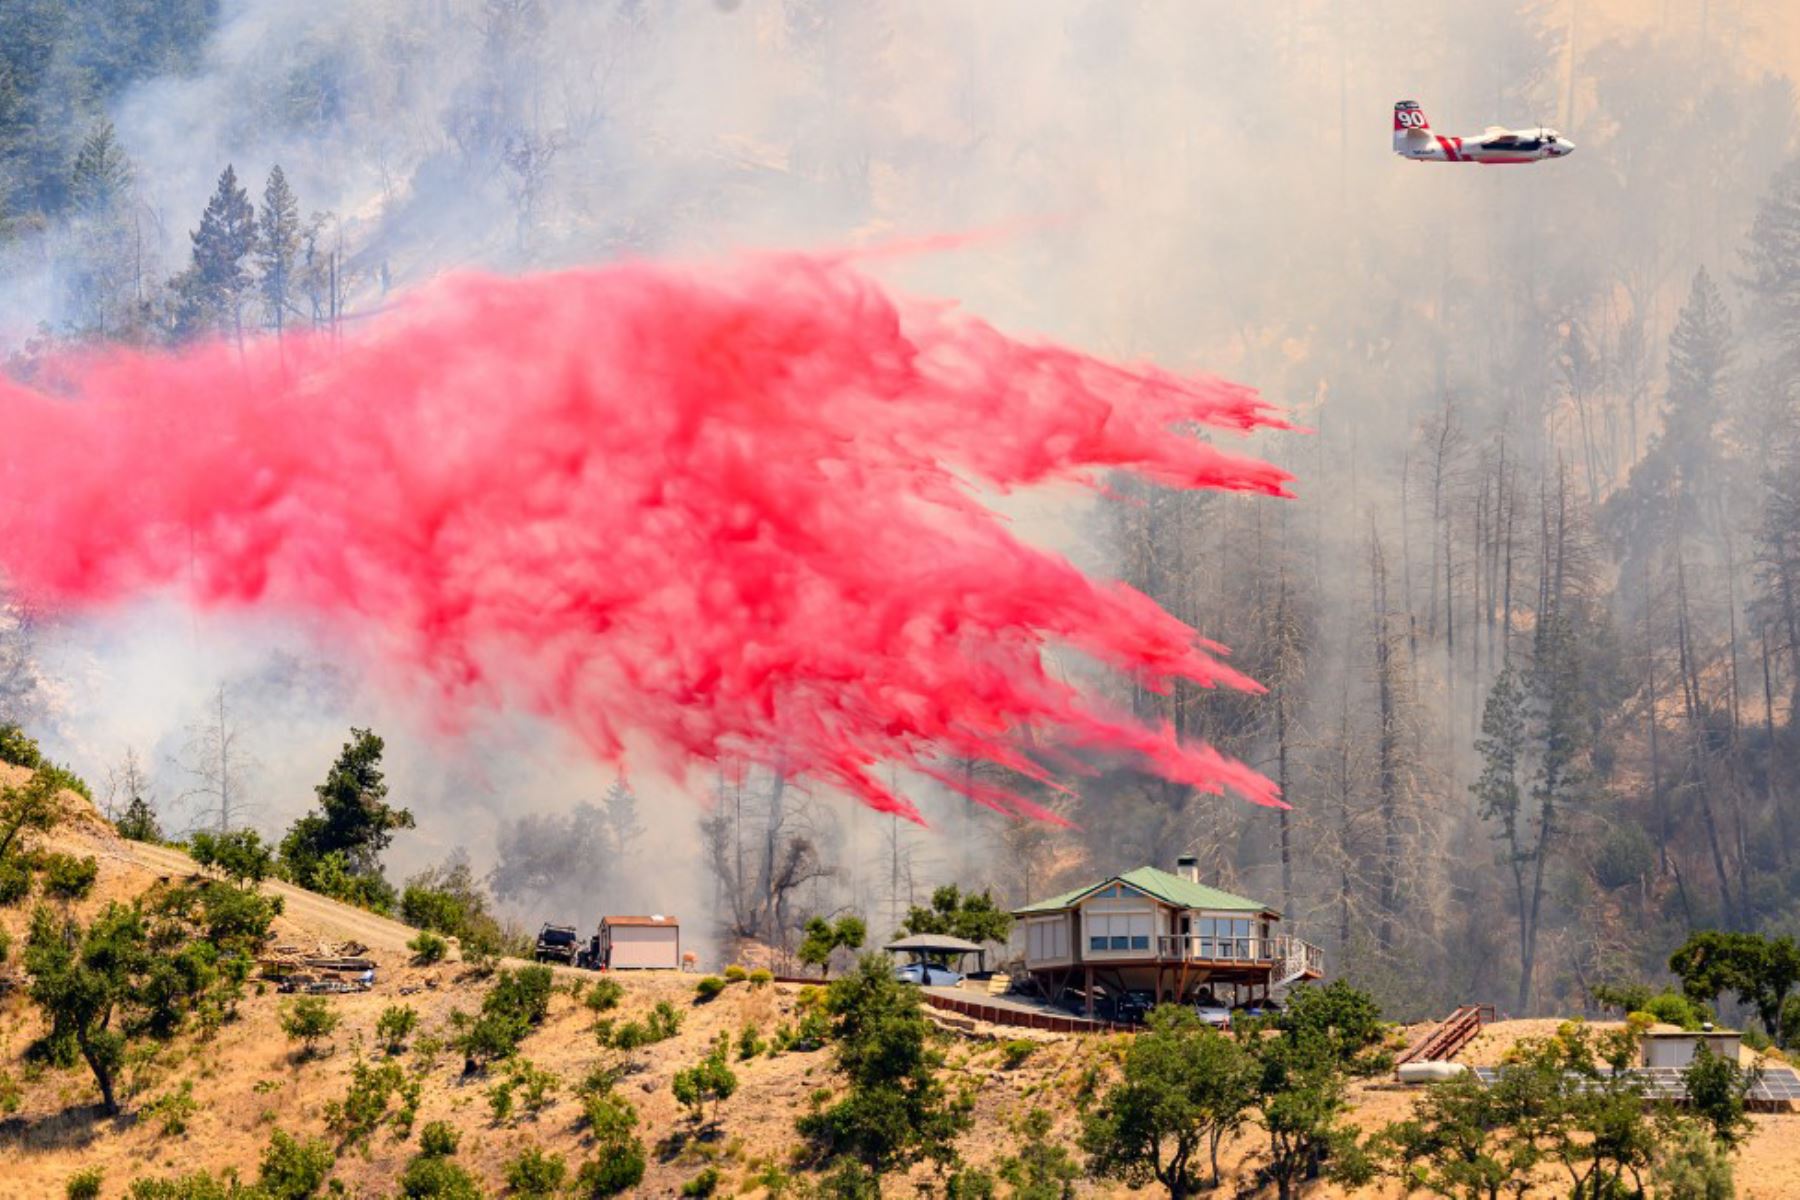 Un avión cisterna arroja retardante de fuego sobre una casa durante el incendio de Toll en Calistoga, California. Una ola de calor está elevando las temperaturas, lo que ha provocado advertencias de incendio con bandera roja en todo el estado.Foto: AFP